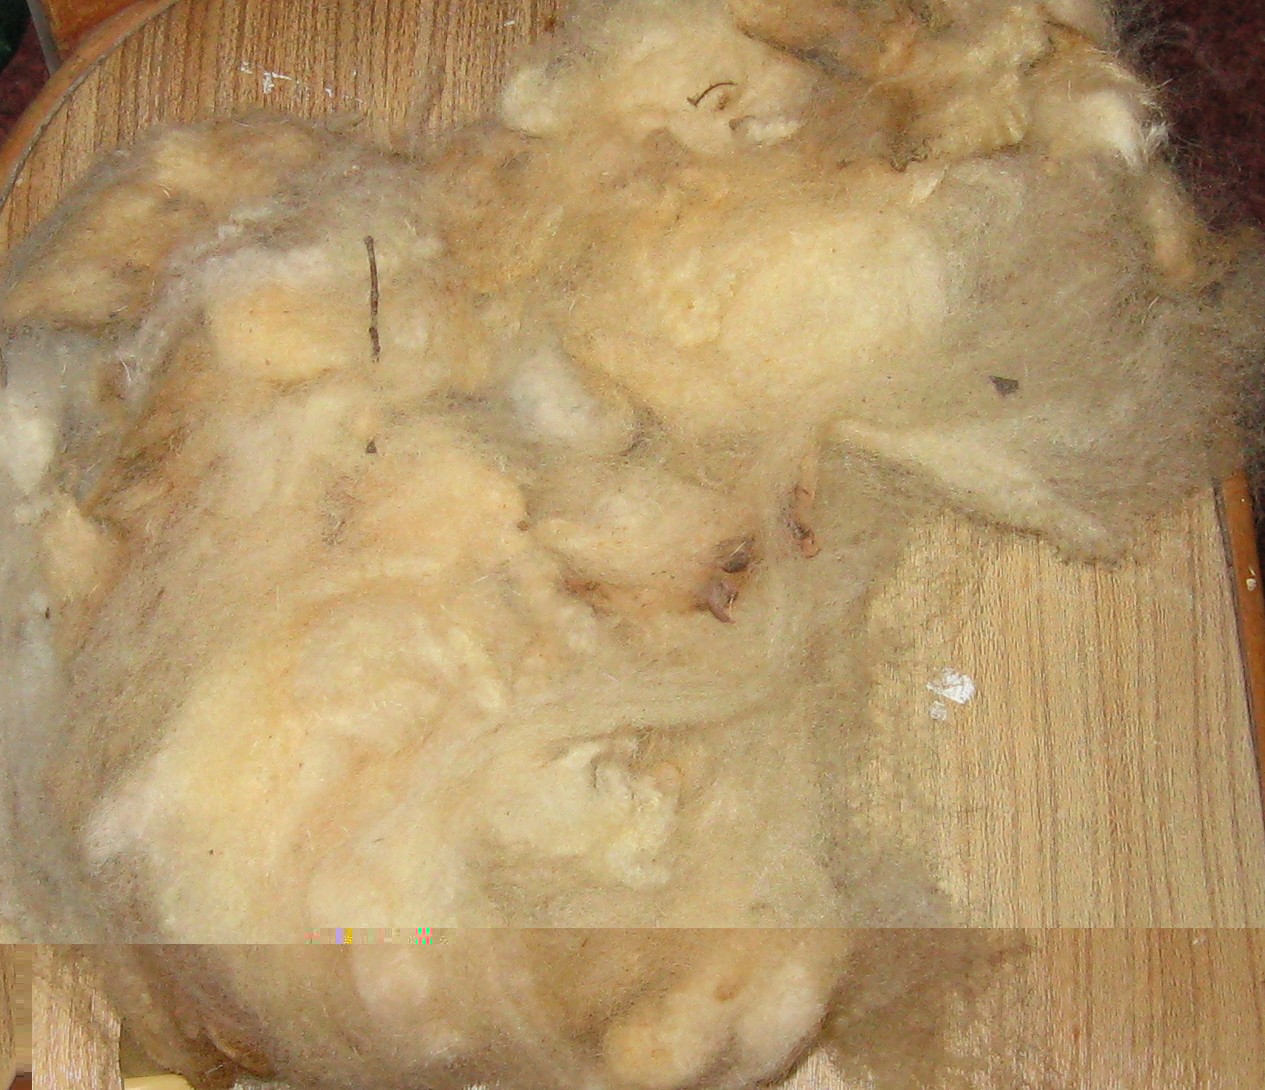 unwashed fleece.JPG